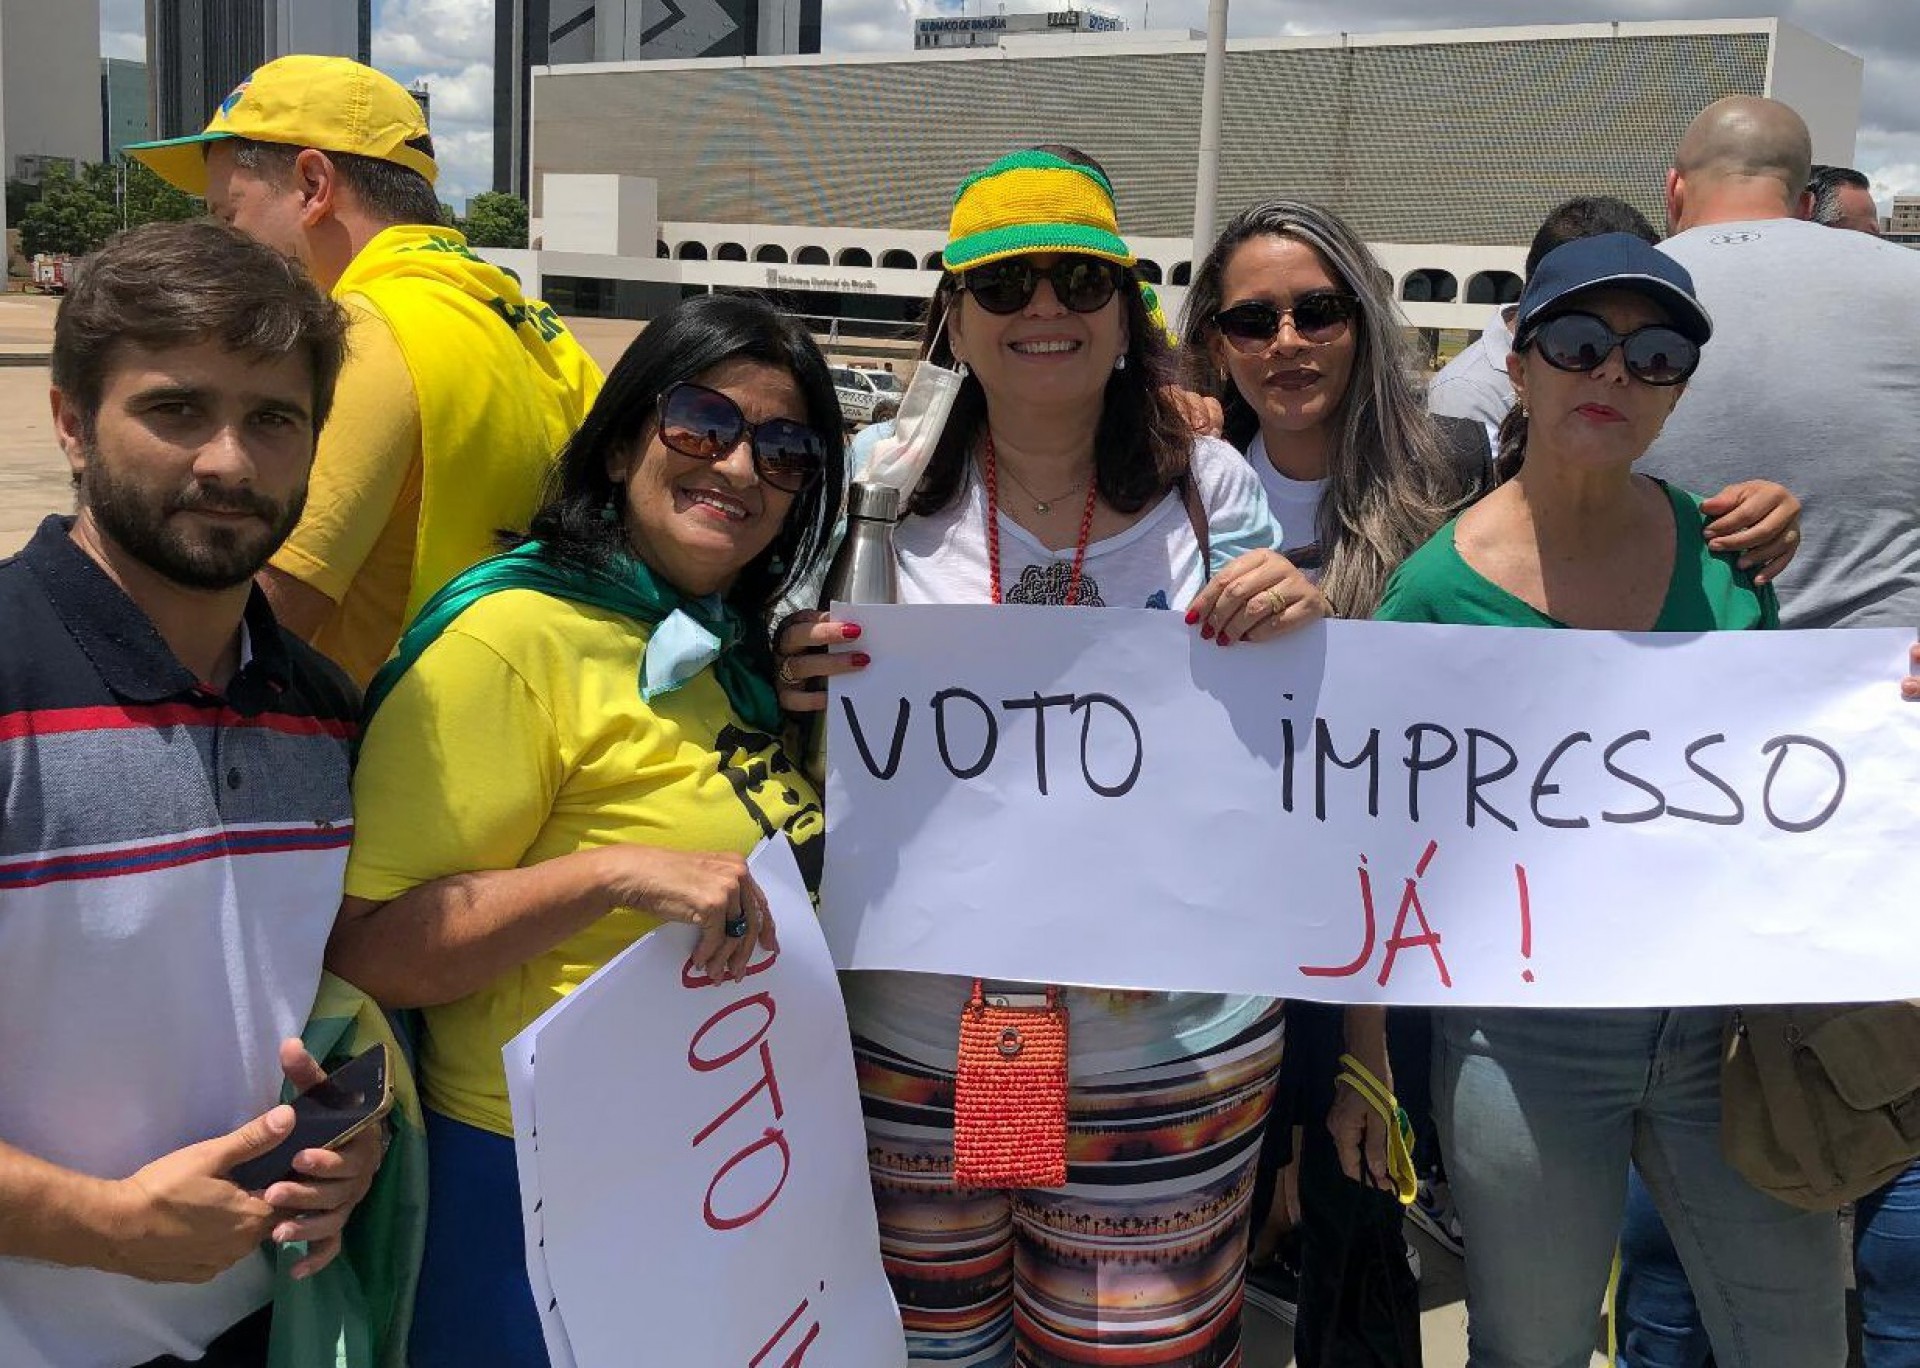 A deputada federal Bia Kicis discursou durante o evento e questionou a credibilidade da urna eletrônica, embora não tenha apresentado evidências de fraude nas eleições brasileiras.